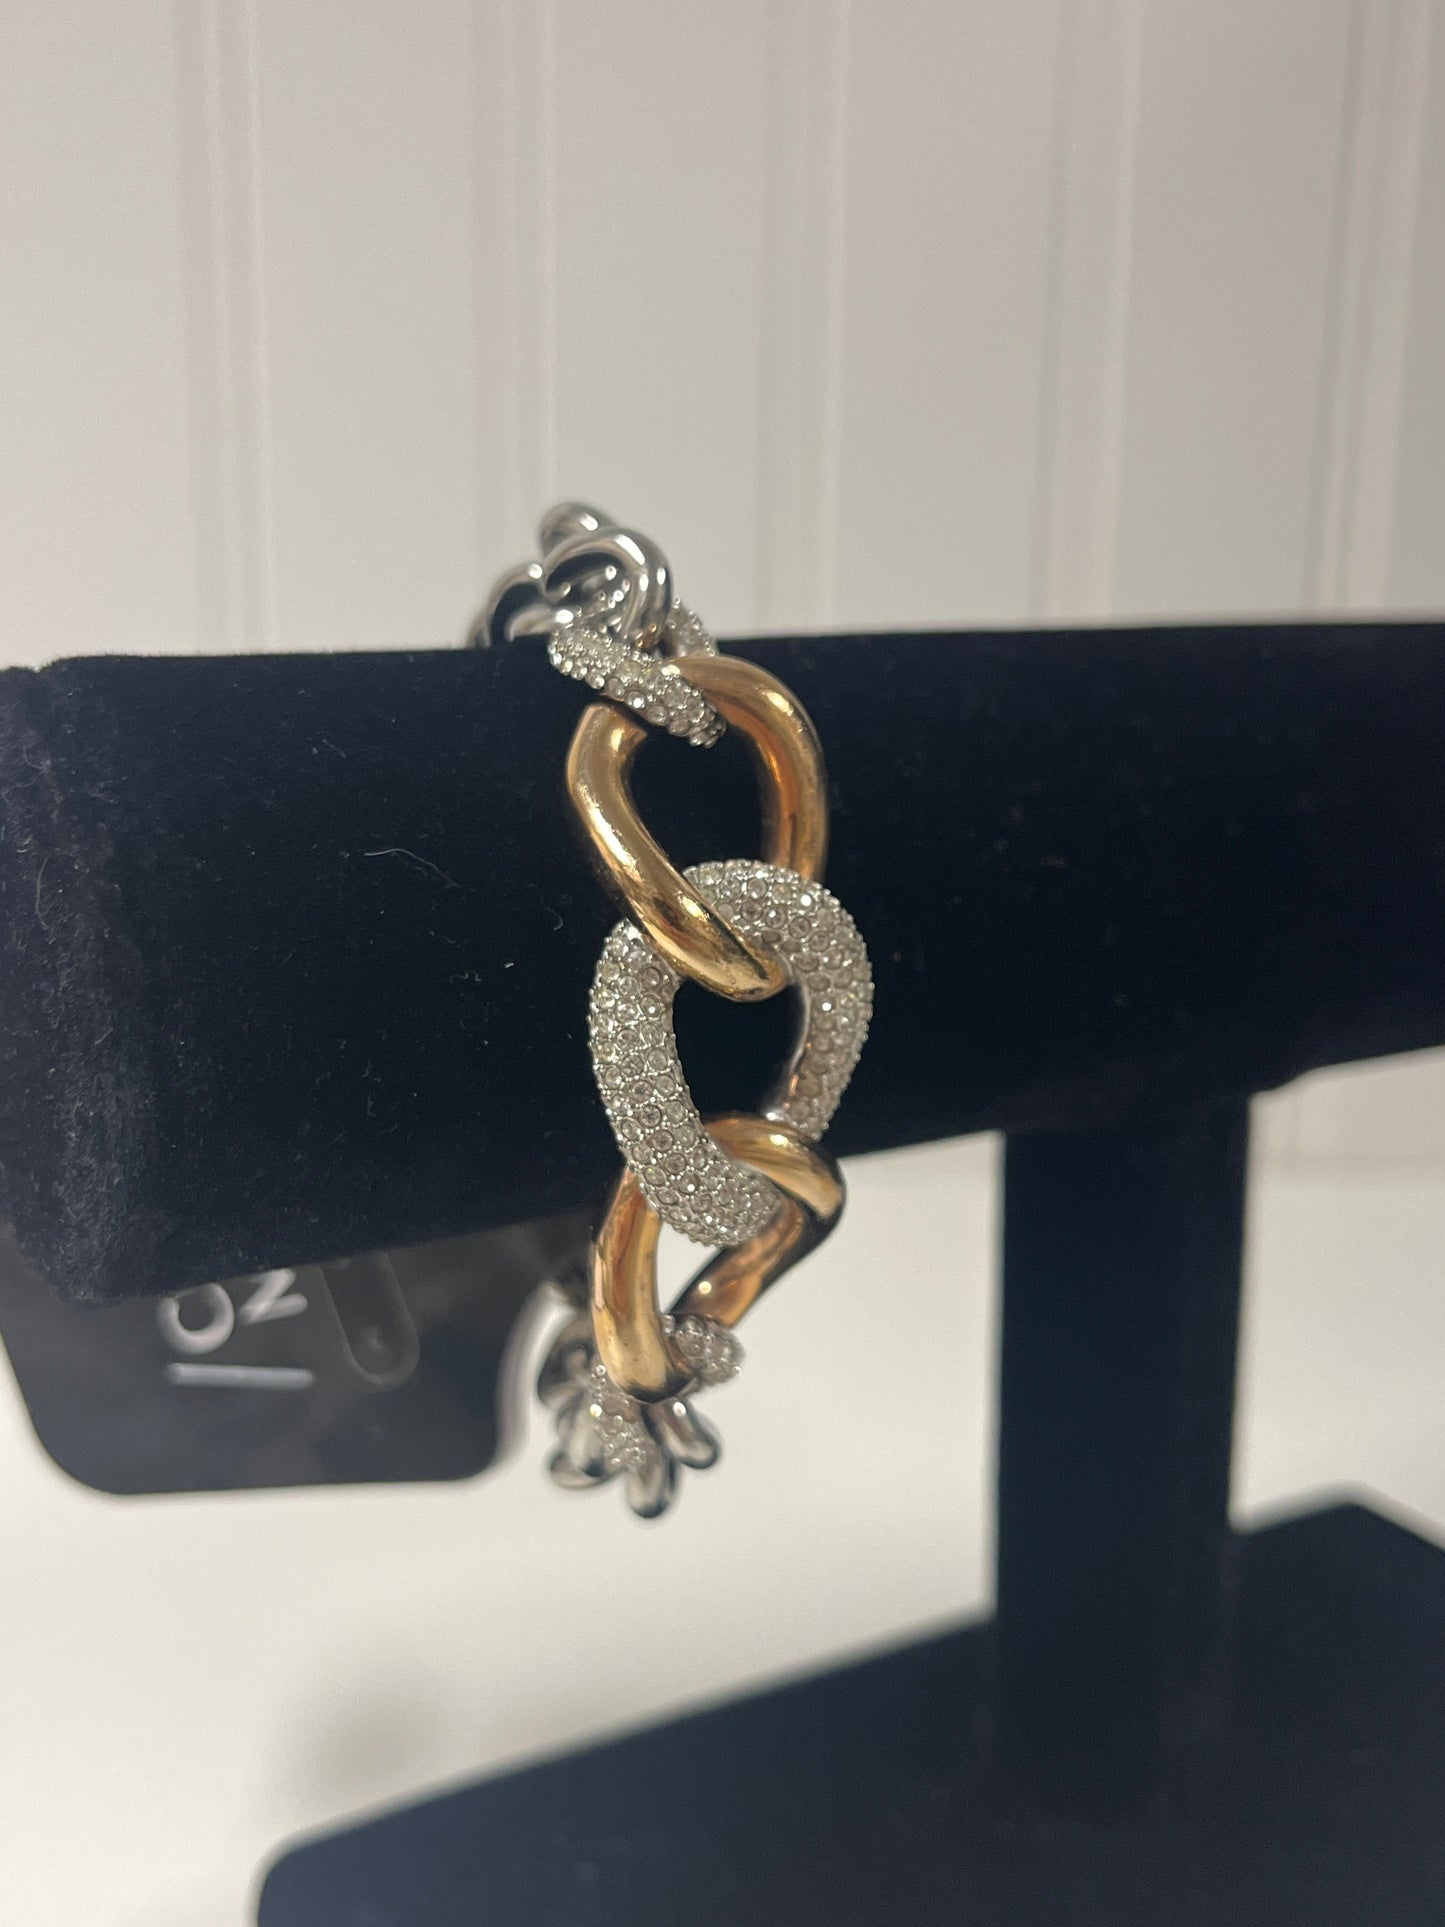 Bracelet Designer Swarovski, Size 1